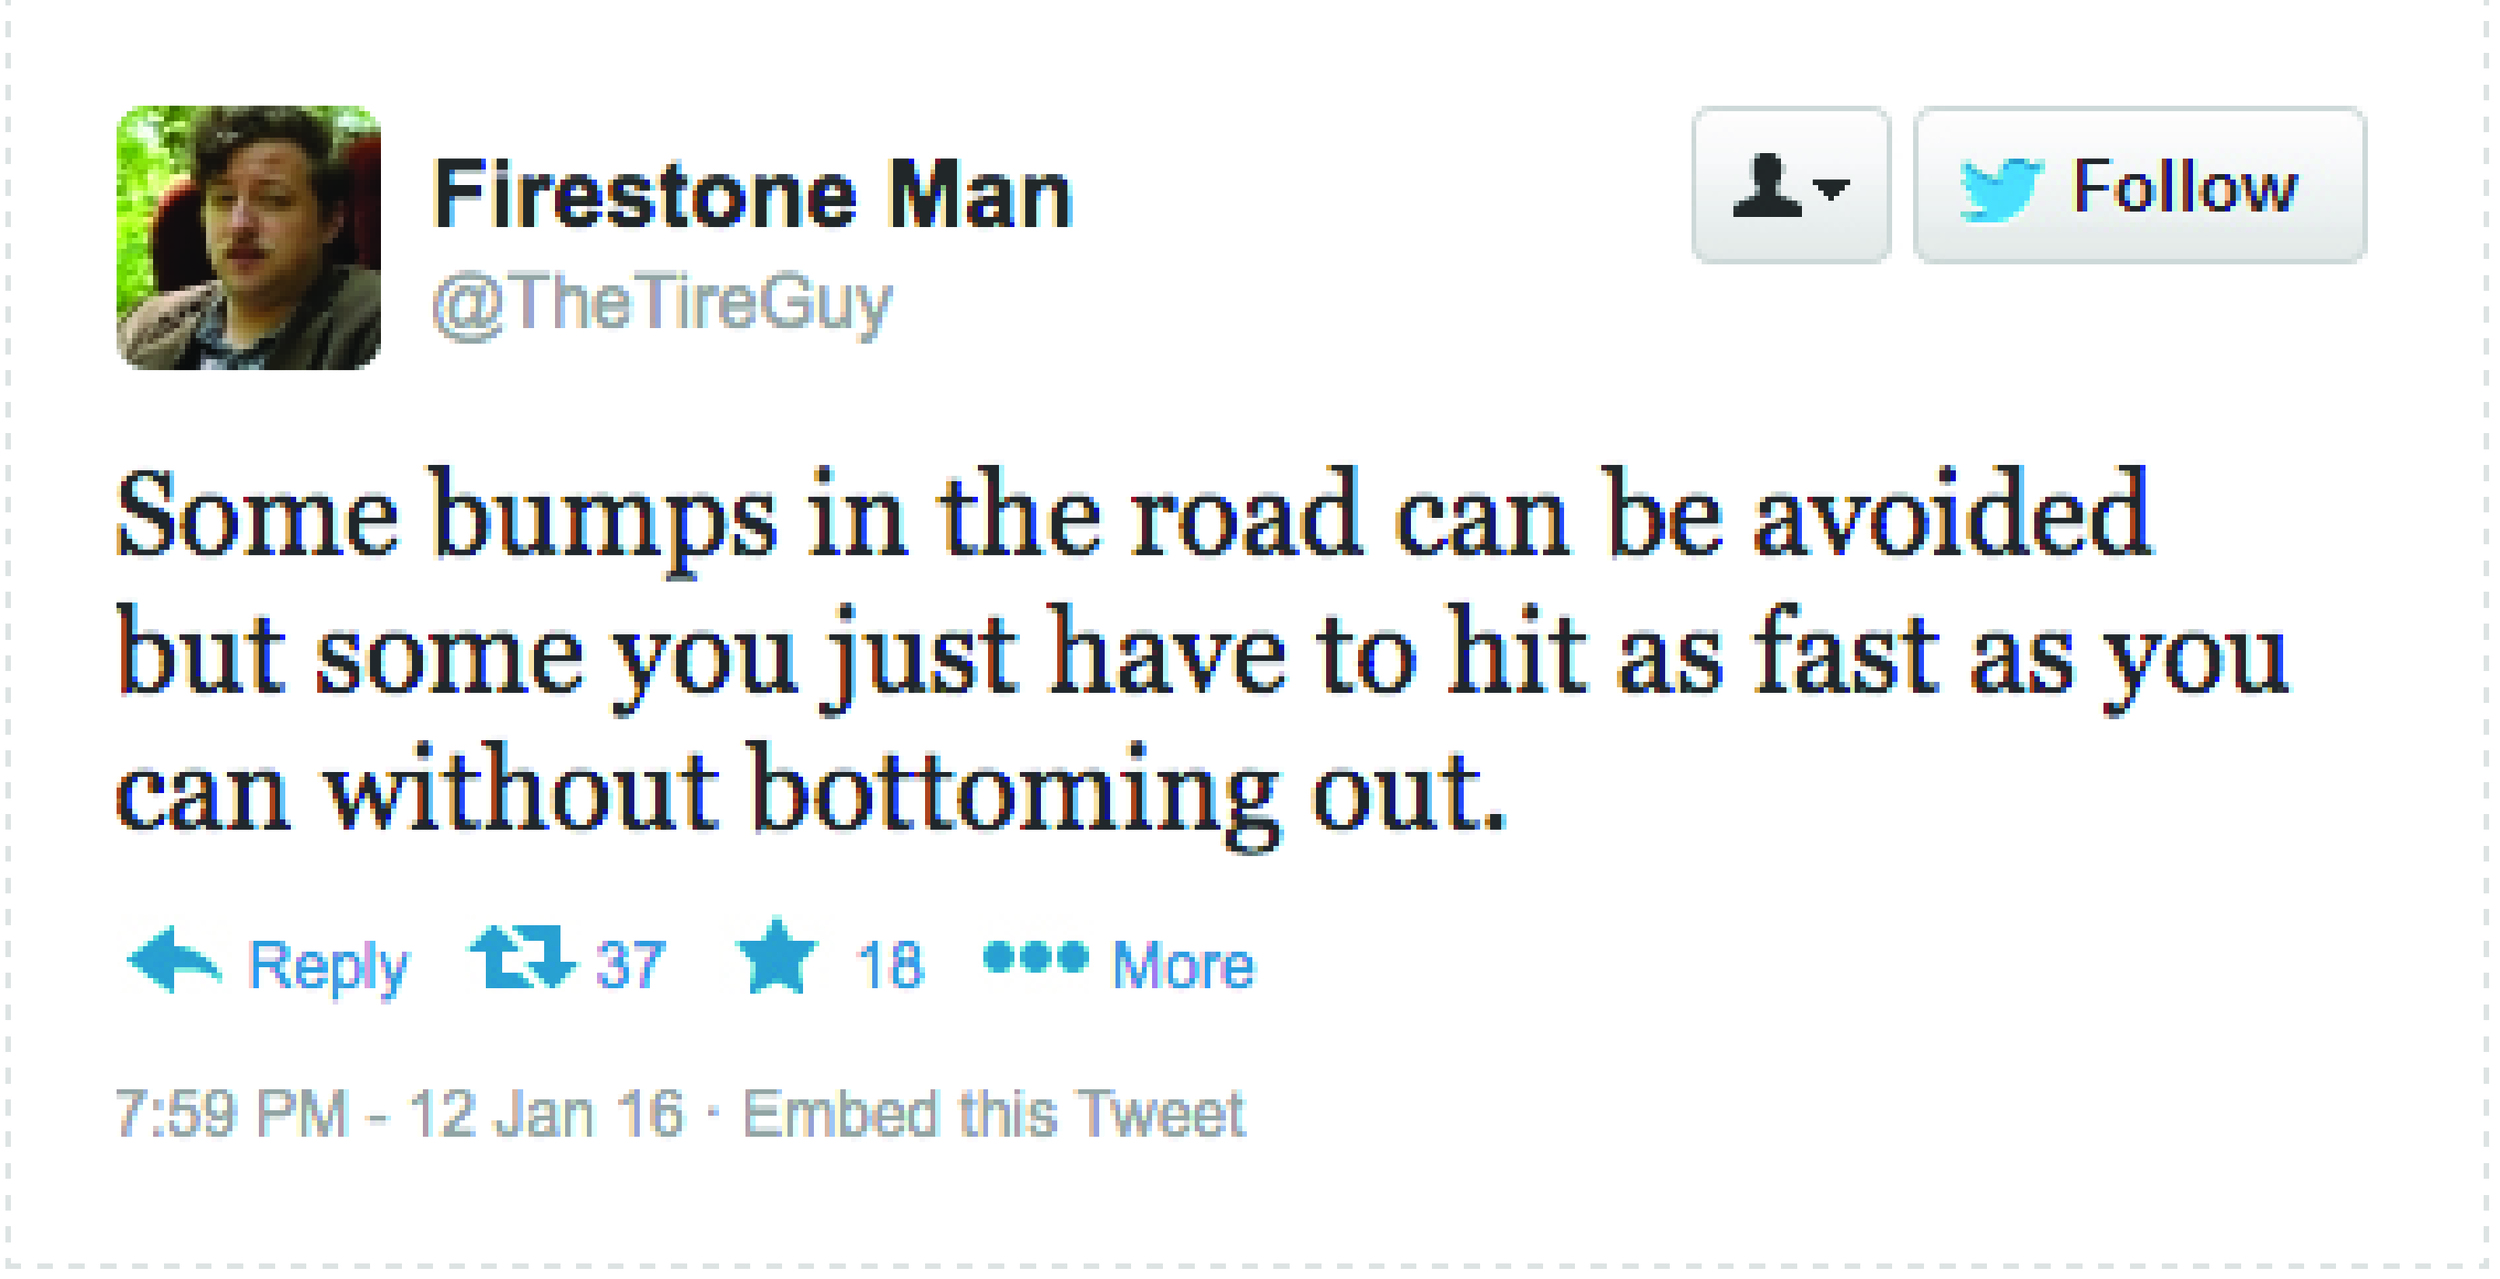 Firestone Tweet Bumps in Road.jpg